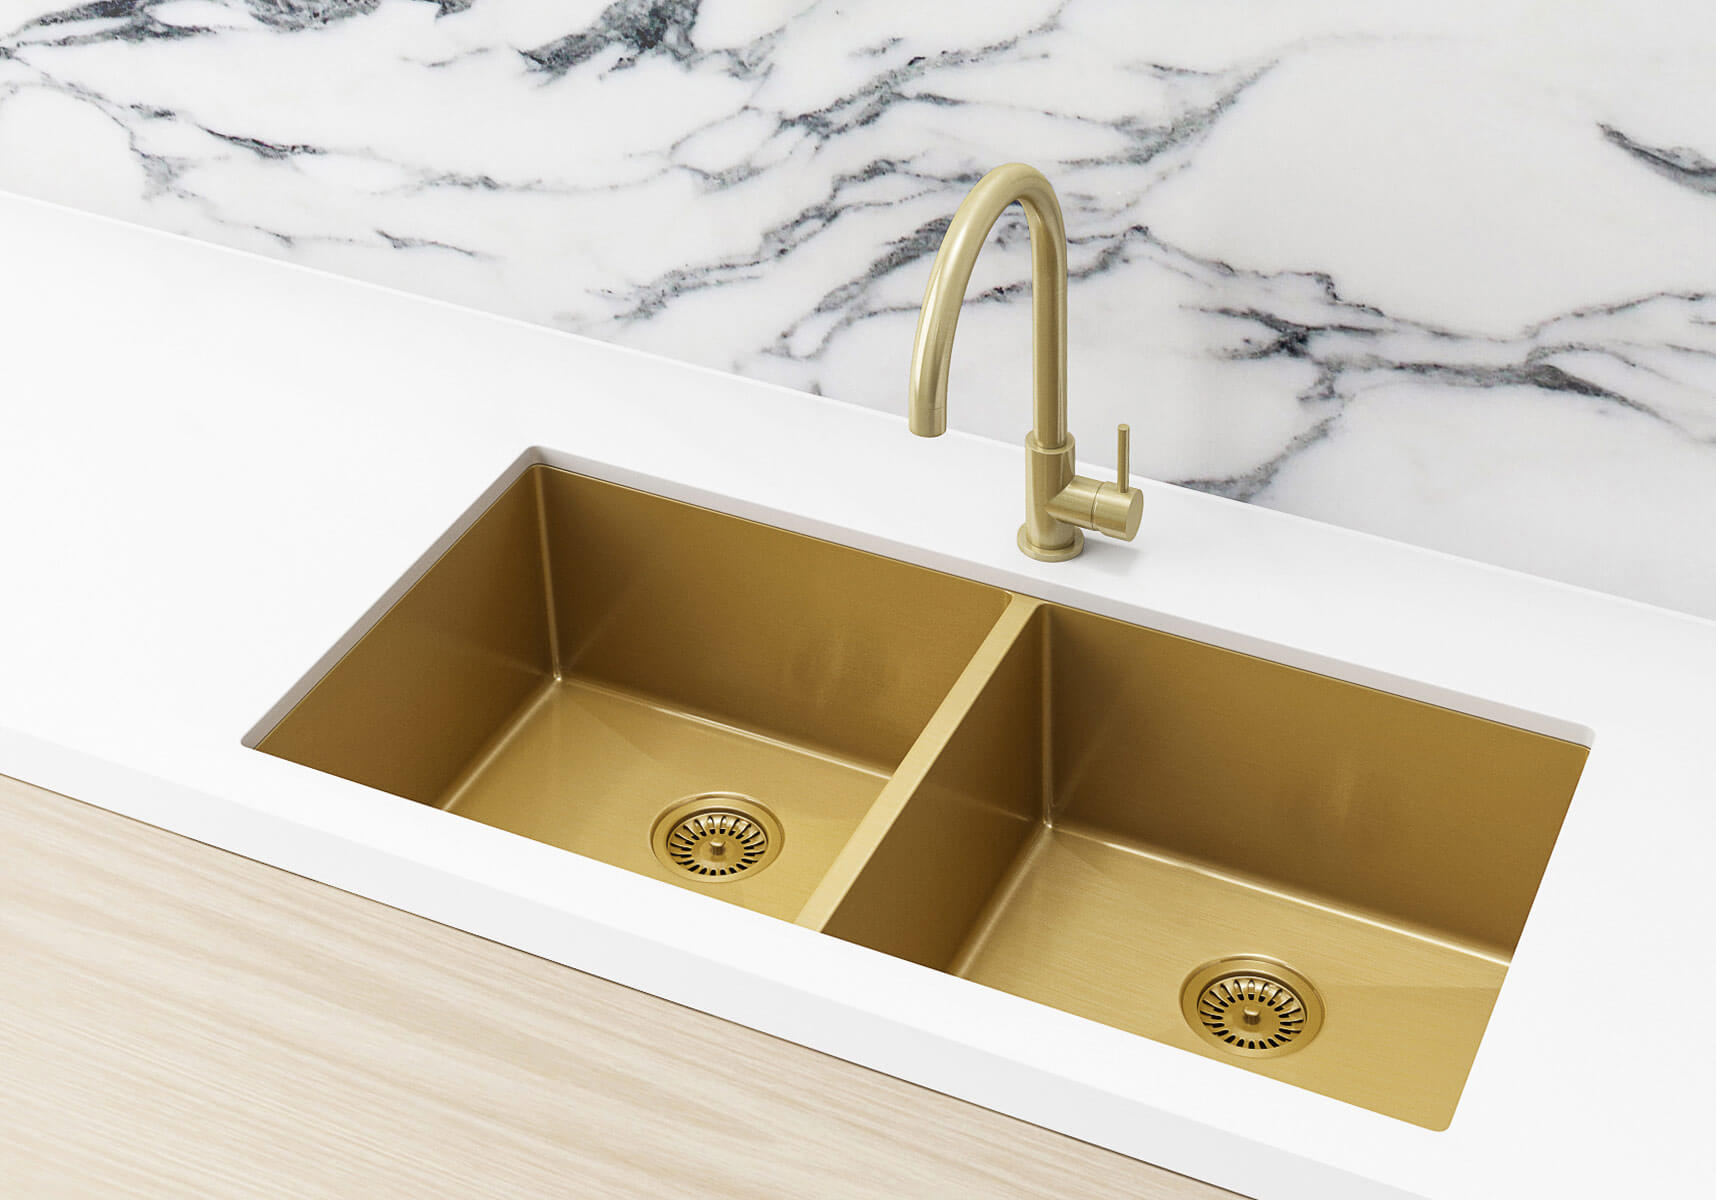 brushed gold kitchen sink waste